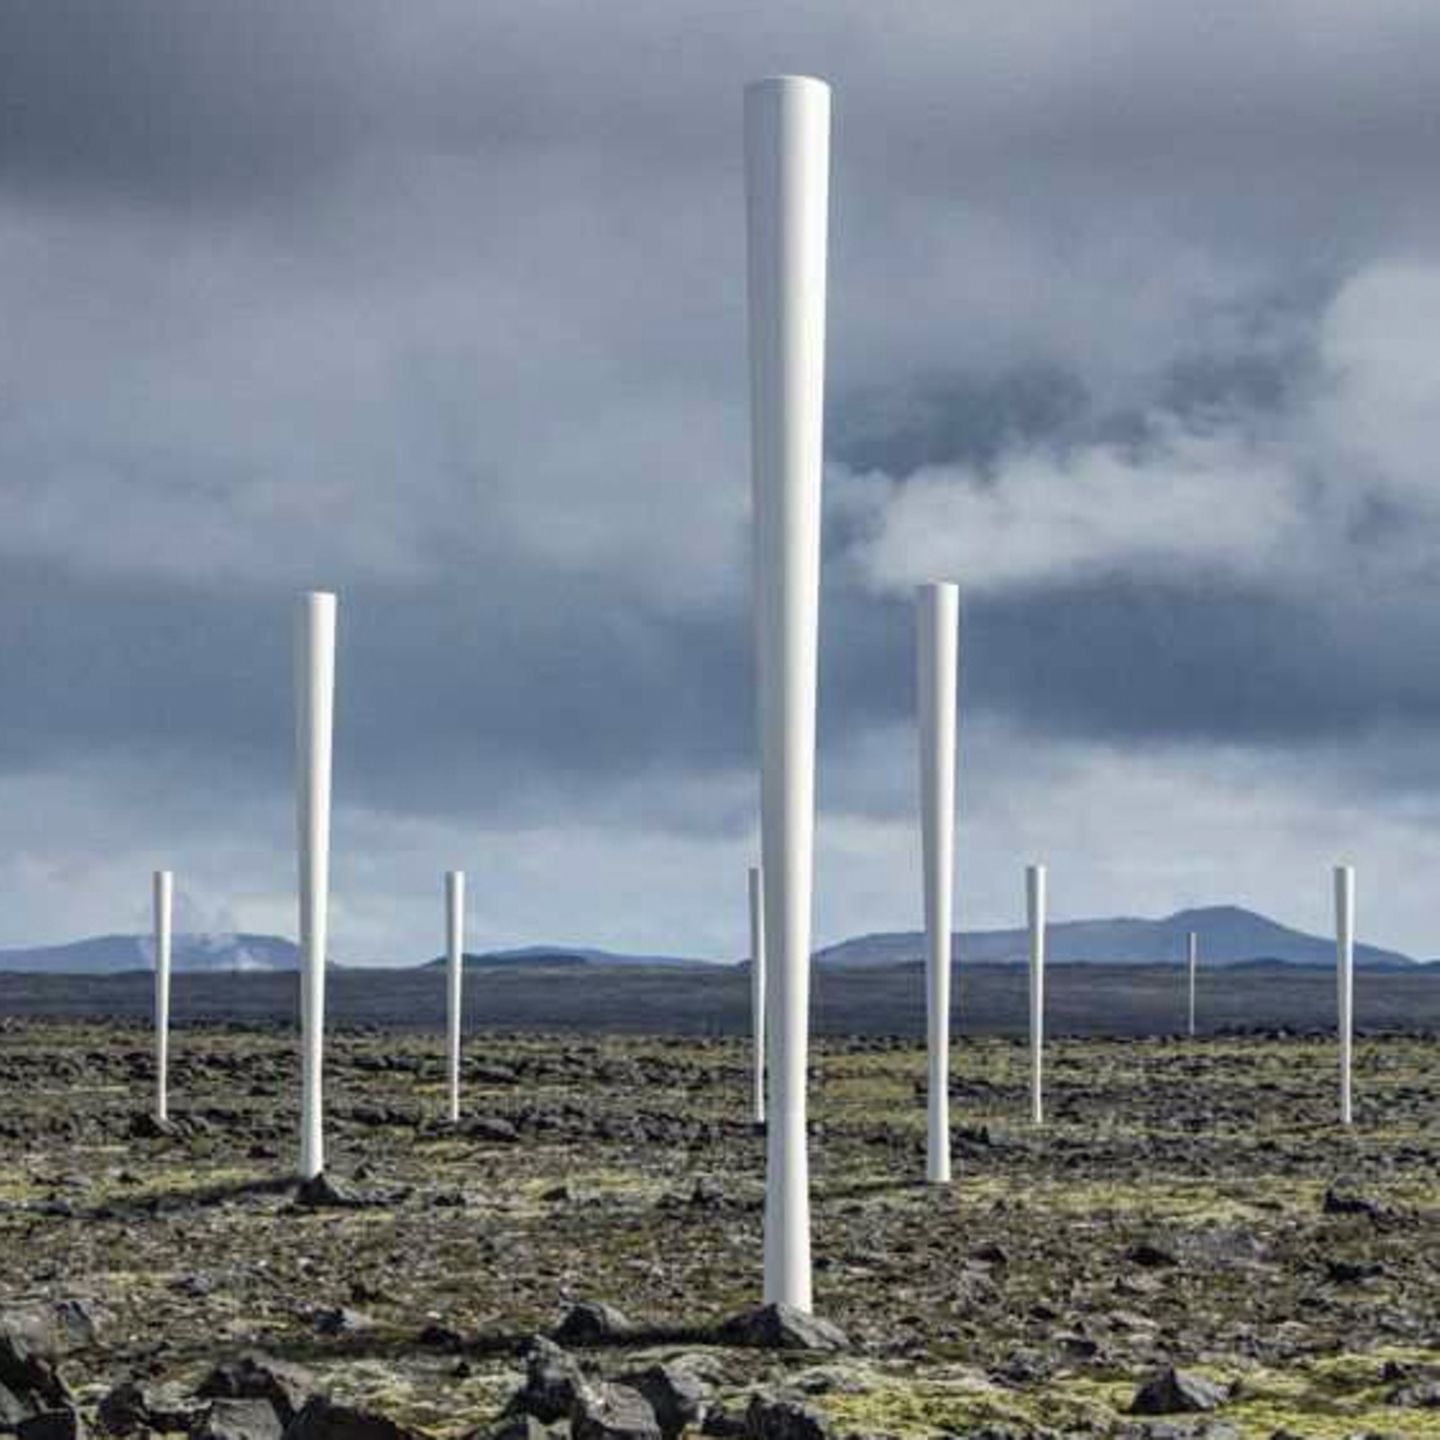 Windenergie wird sanft – spanische Anlage kommt ohne rotierende